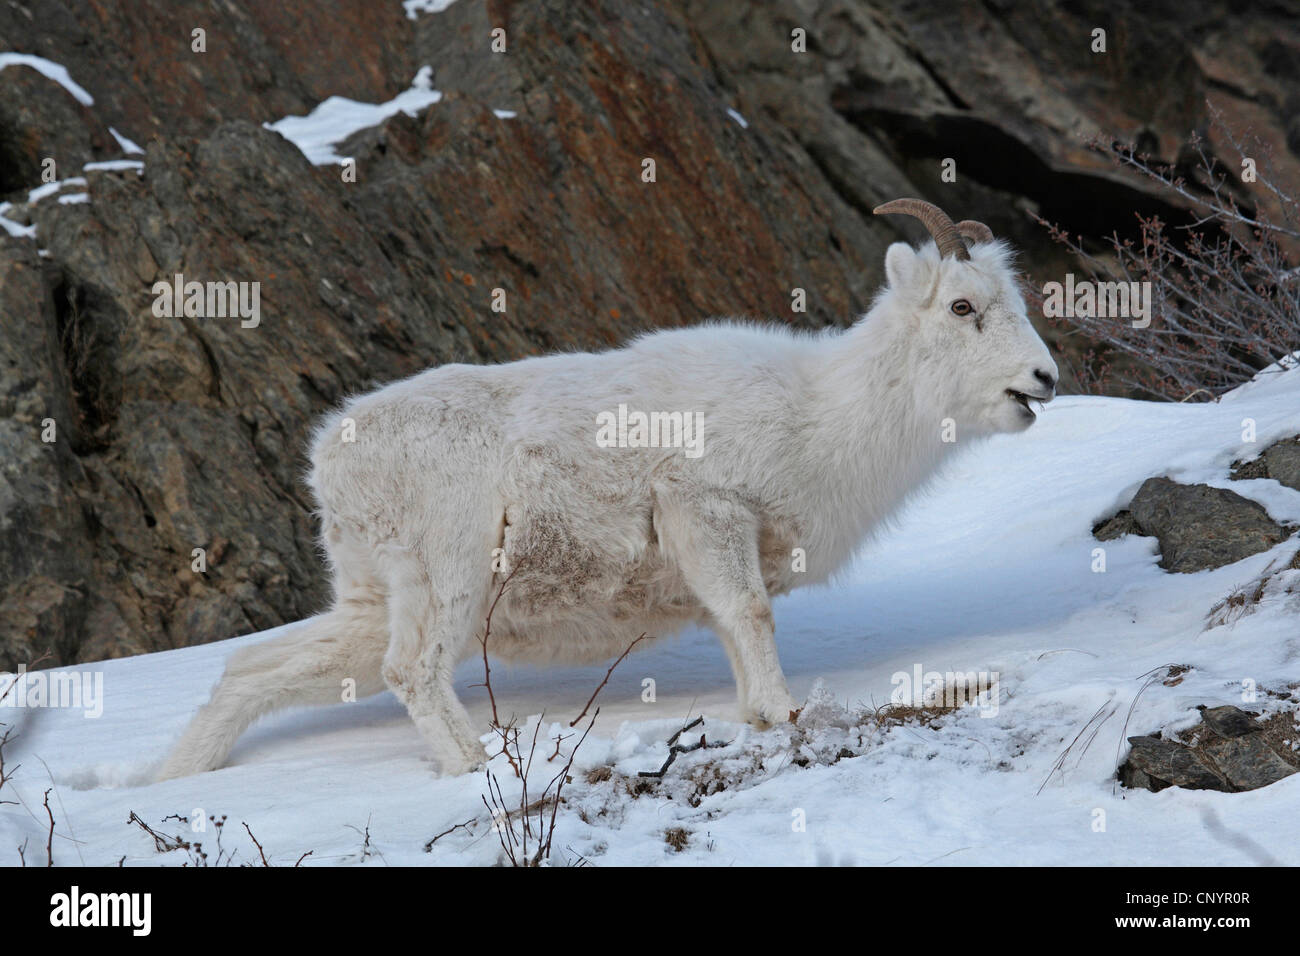 Les mouflons de Dall, mouton blanc (Ovis dalli), courant à travers la neige, USA, Alaska Banque D'Images